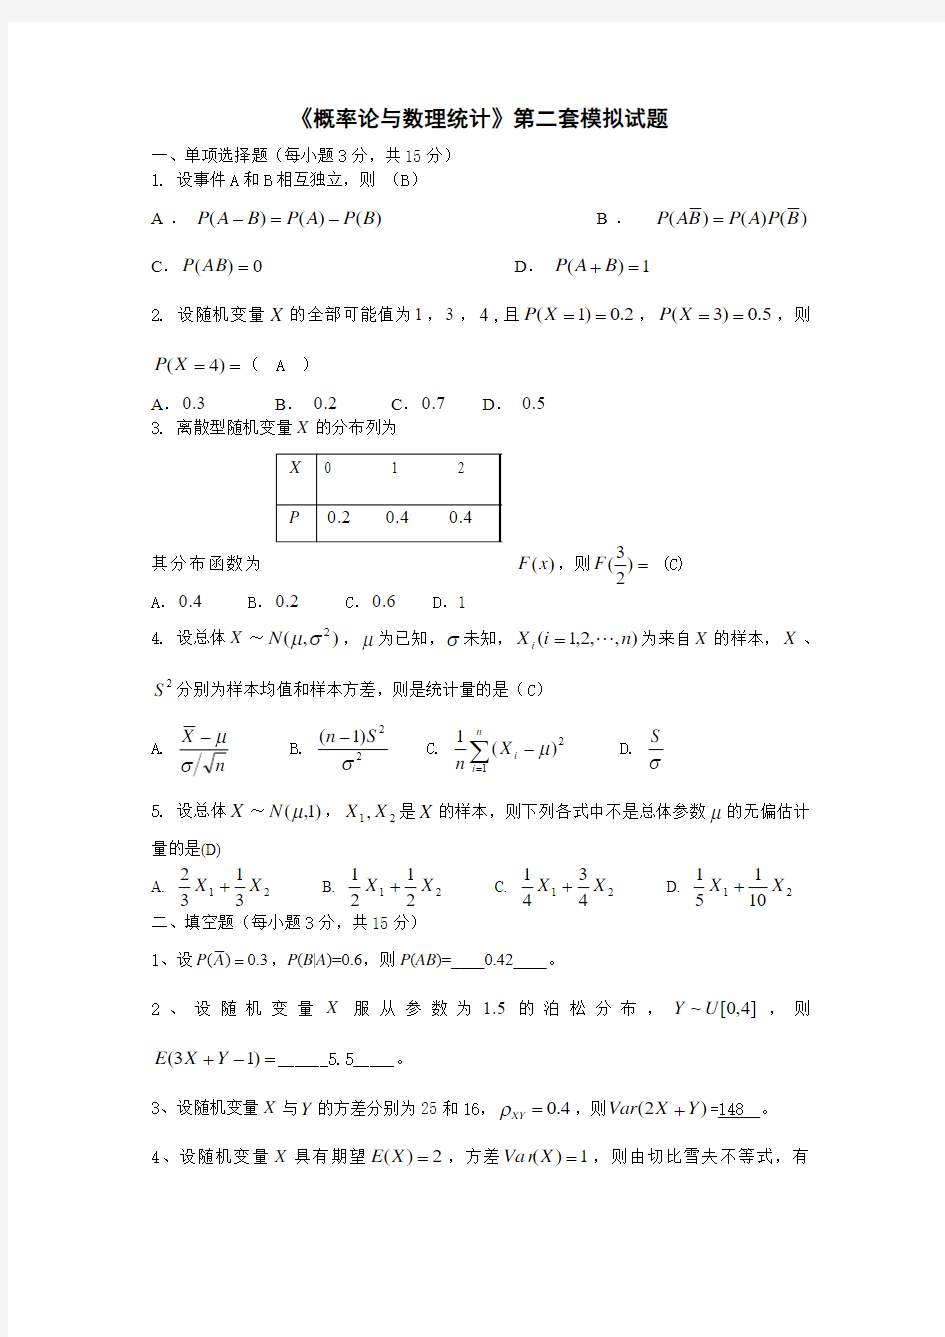 《概率论与数理统计》第二套模拟试题 (2)